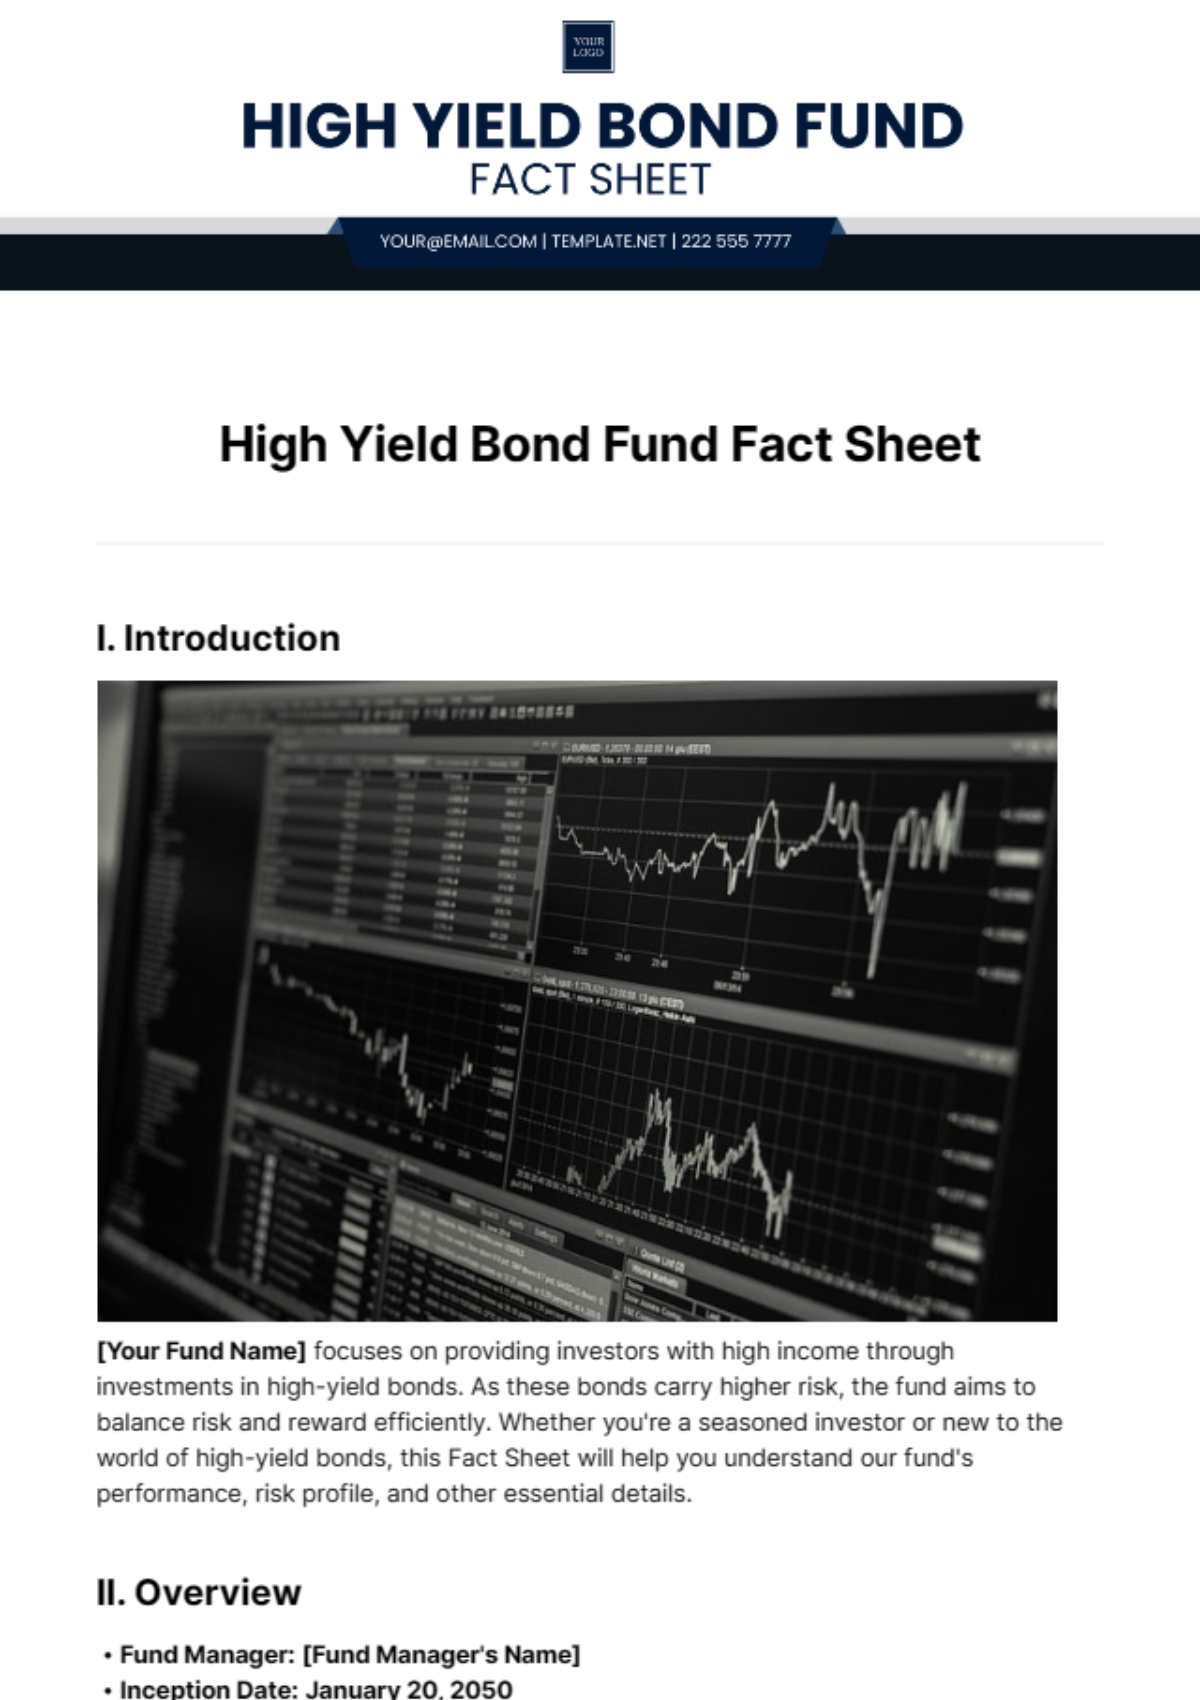 High Yield Bond Fund Fact Sheet Template